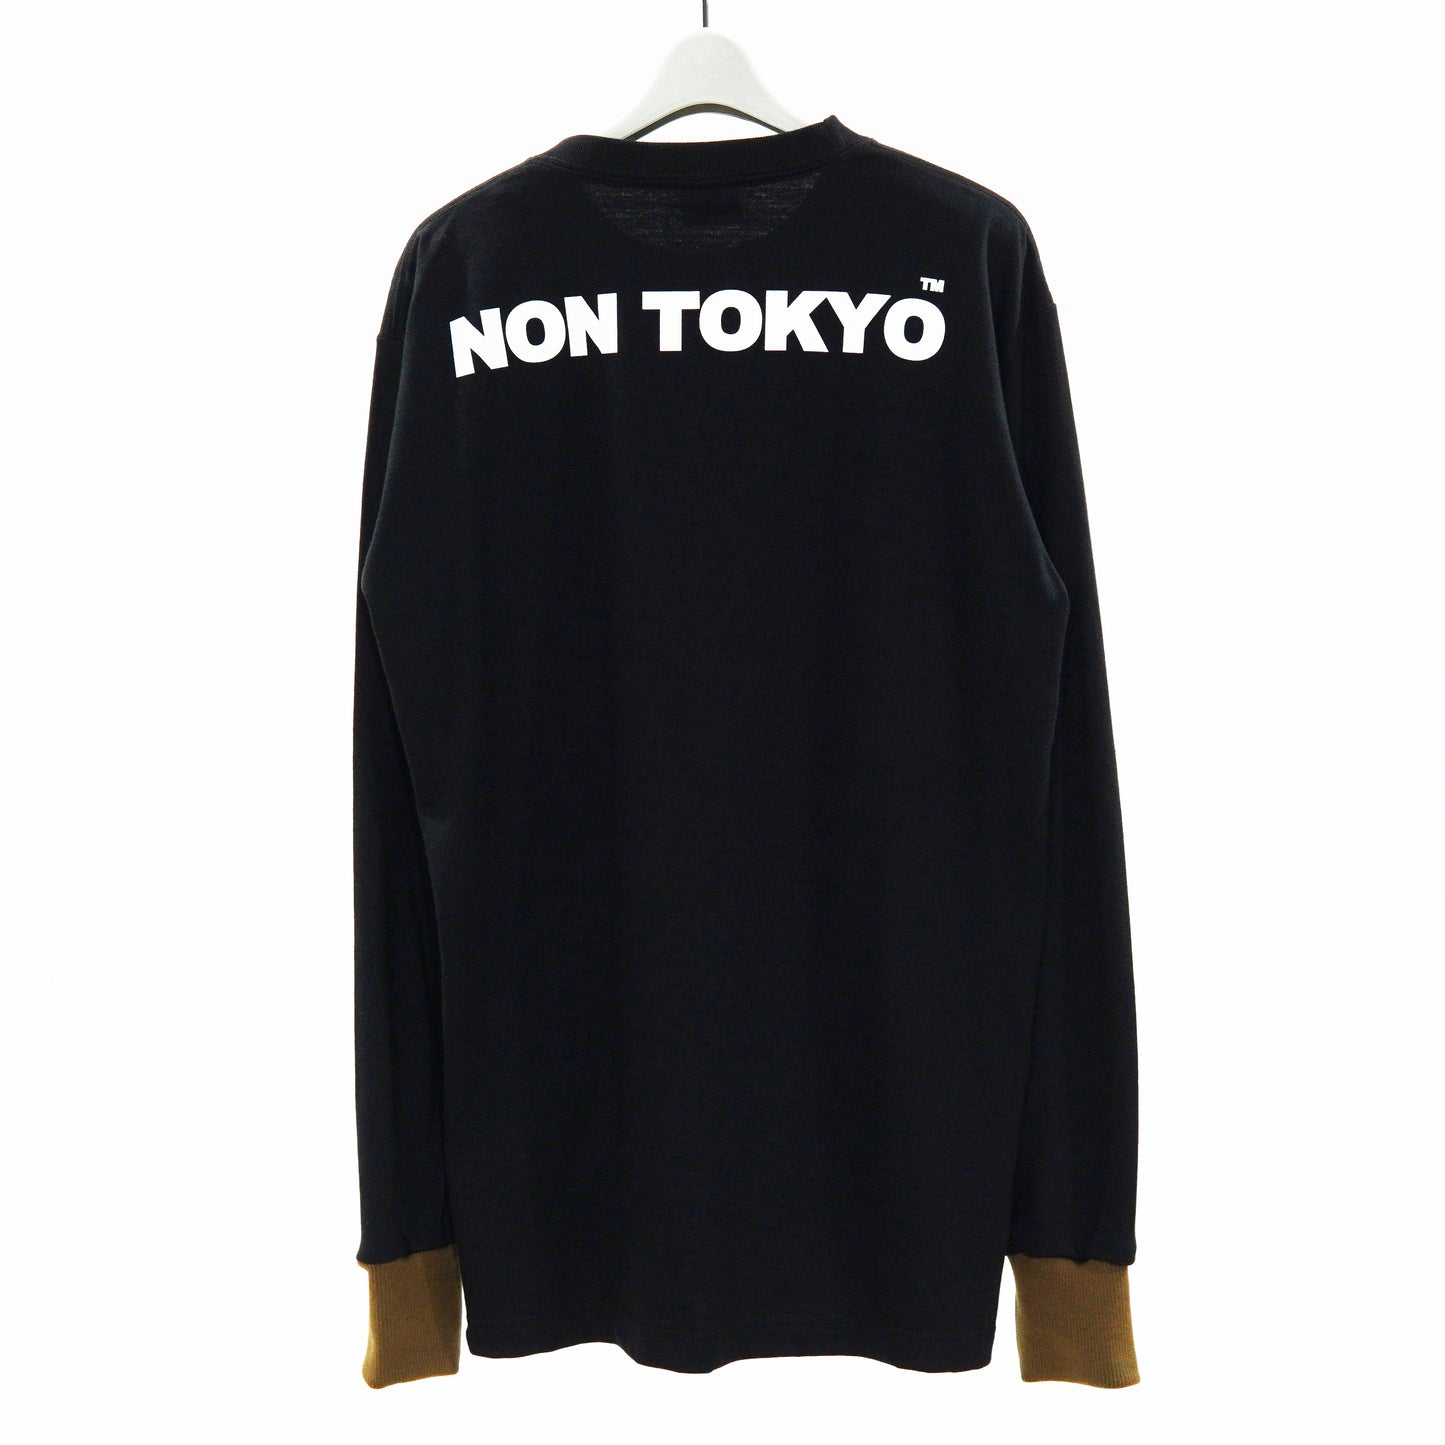 NON TOKYO / GRAPHIC LONG PRINT T-SHIRT (DAD / BLACK) / 〈ノントーキョー〉グラフィックロングプリントTシャツ (ダッド / ブラック)